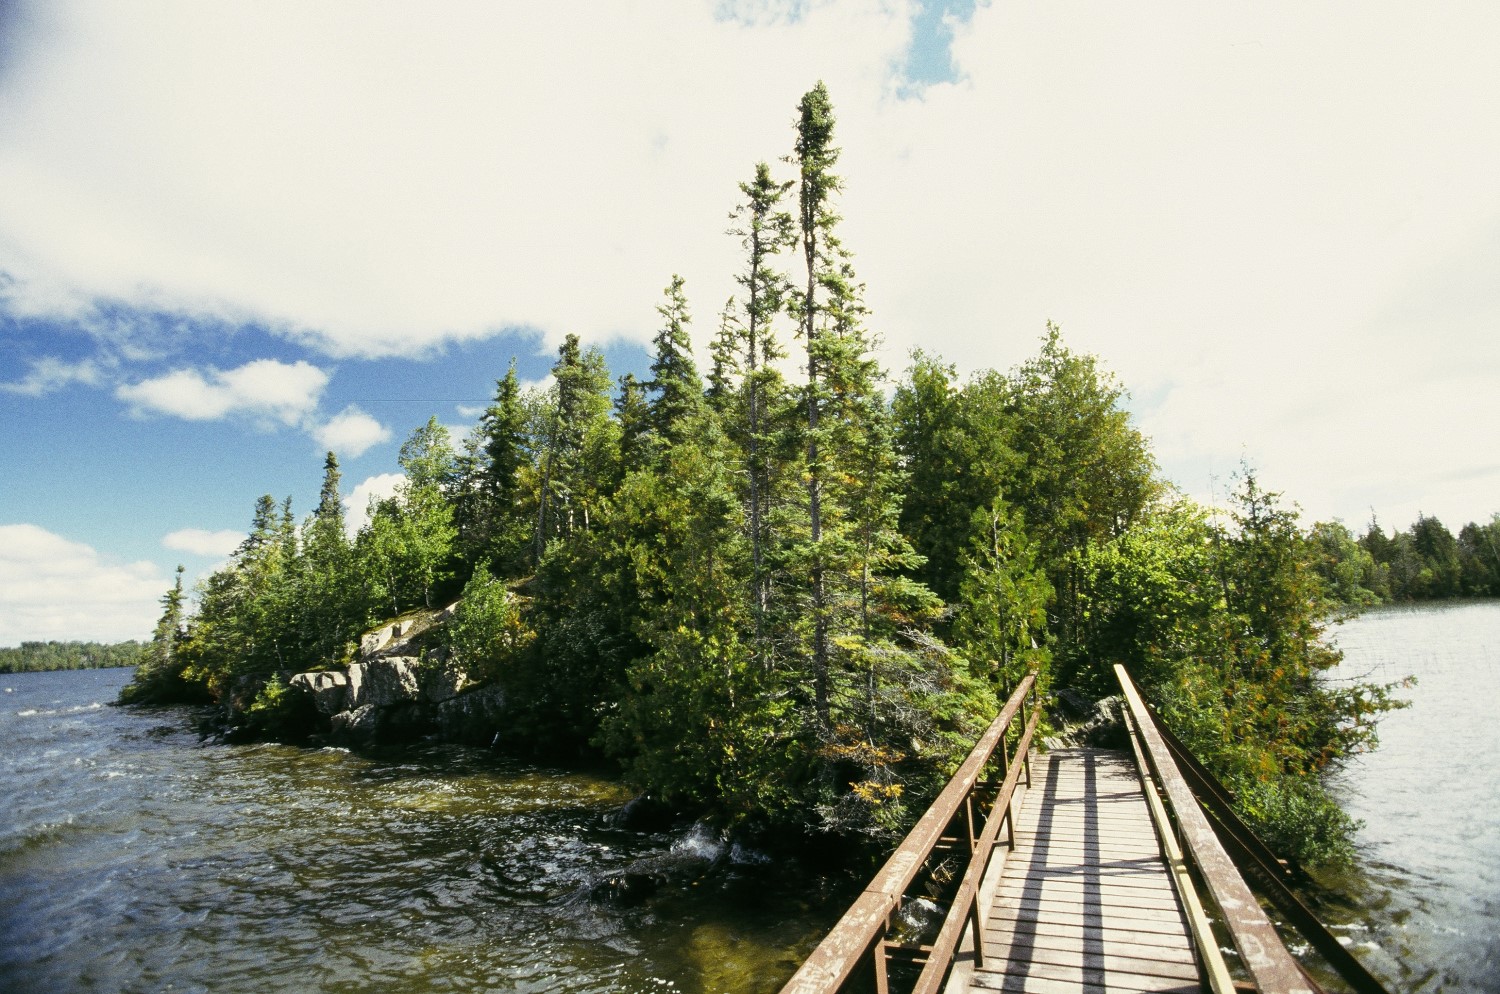 Un étroit pont piétonnier en bois sur l'eau menant à une petite île boisée sous un ciel ensoleillé.